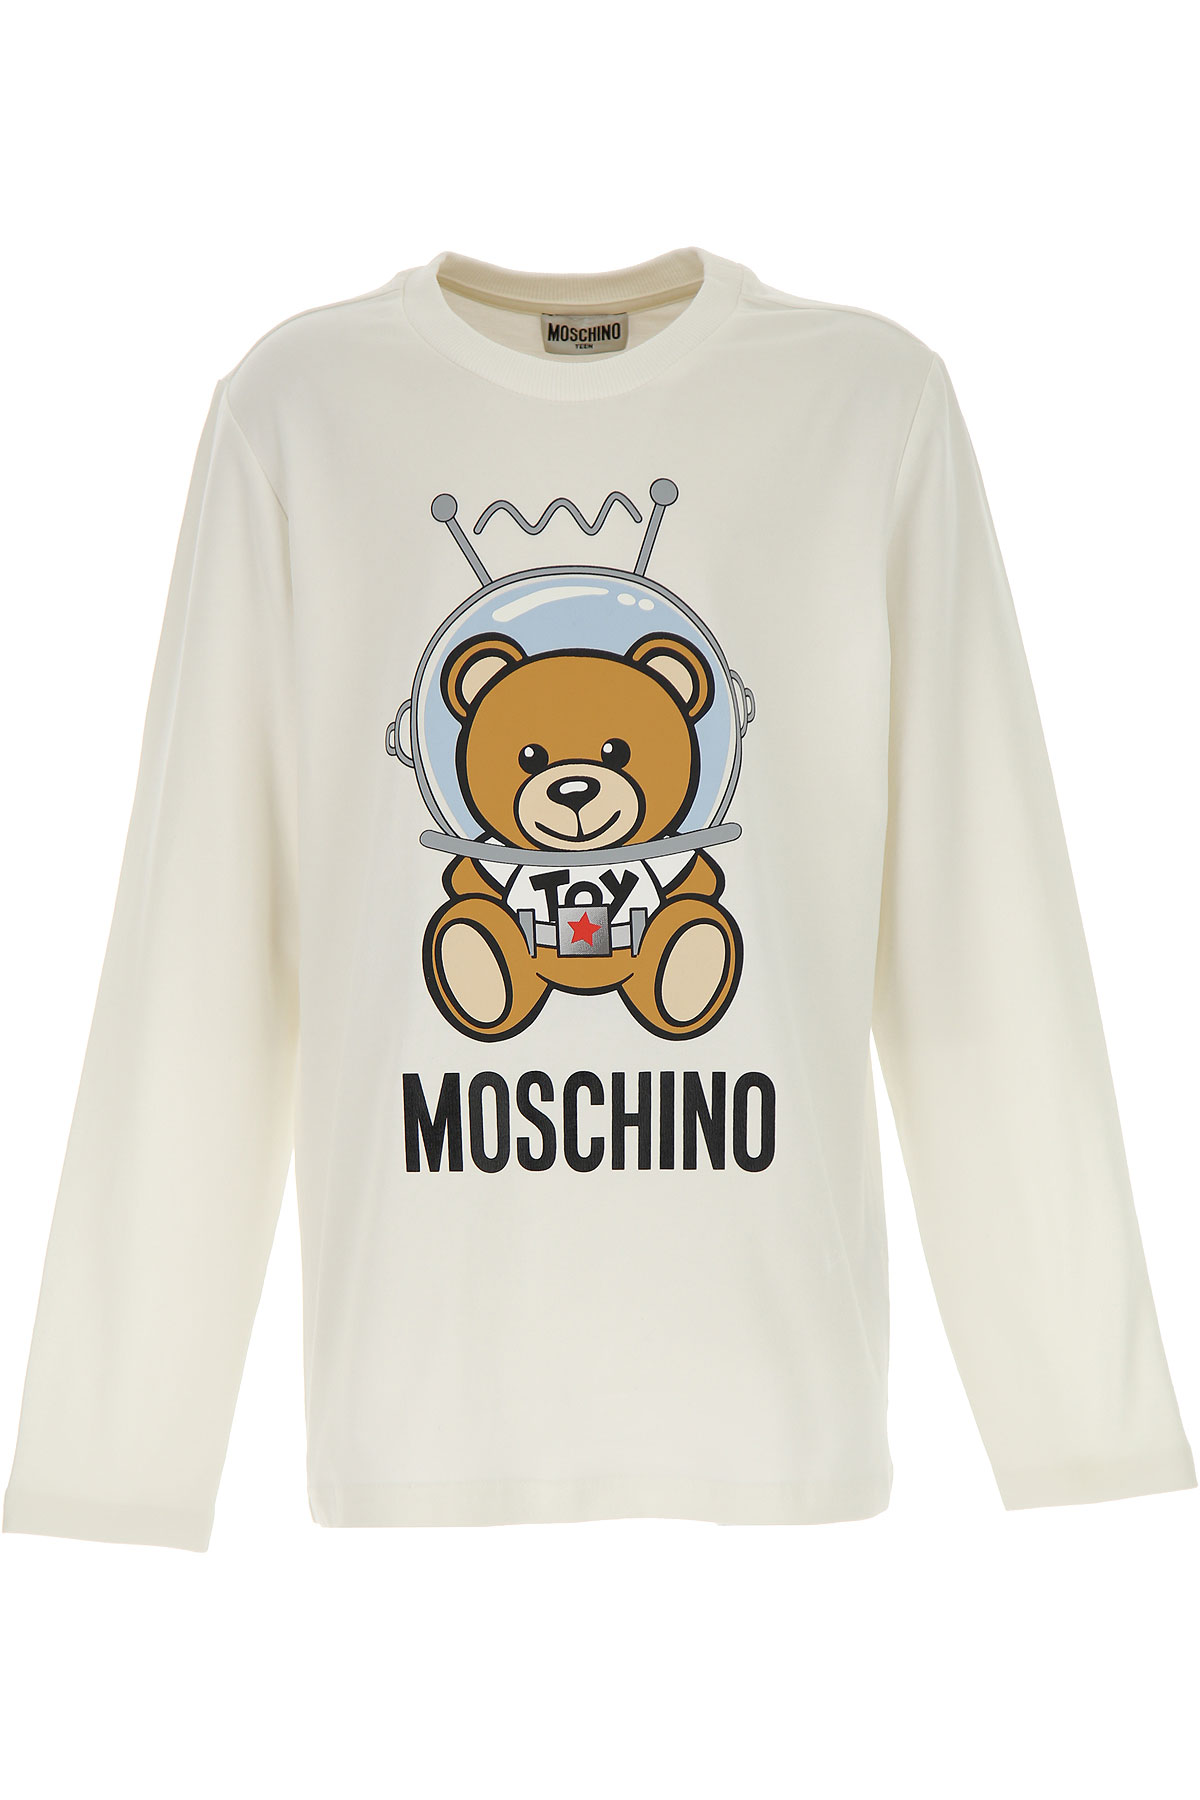 Moschino Kinder T-Shirt für Jungen Günstig im Sale, Weiss, Baumwolle, 2017, 10Y 12Y 14Y 4Y 5Y 6Y 8Y